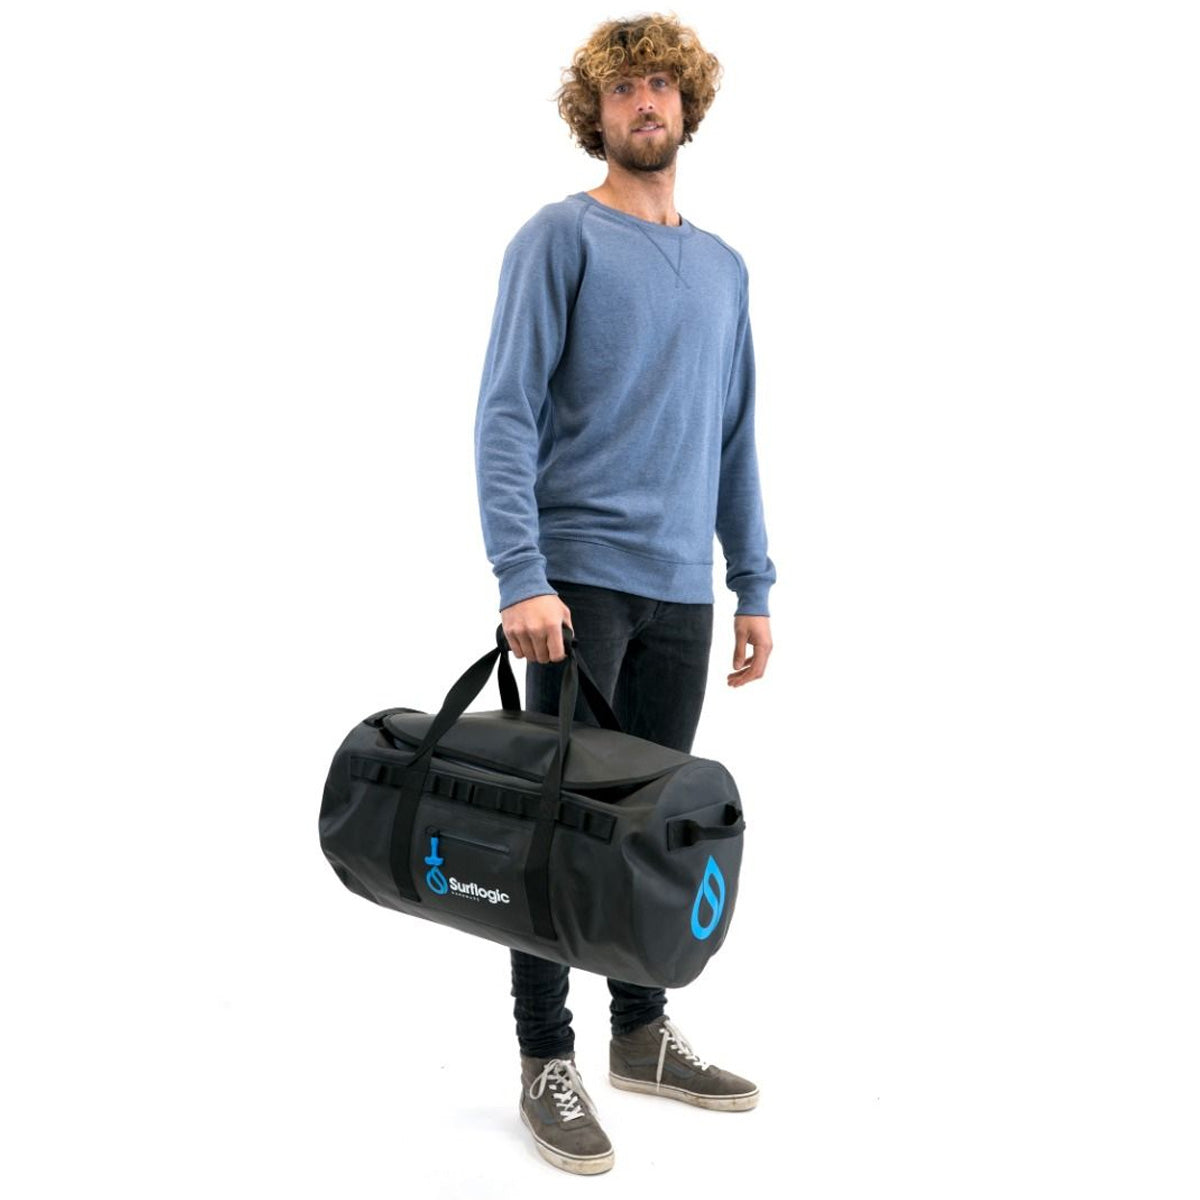 Surflogic Prodry Zip Waterproof Duffle Bag - SUP